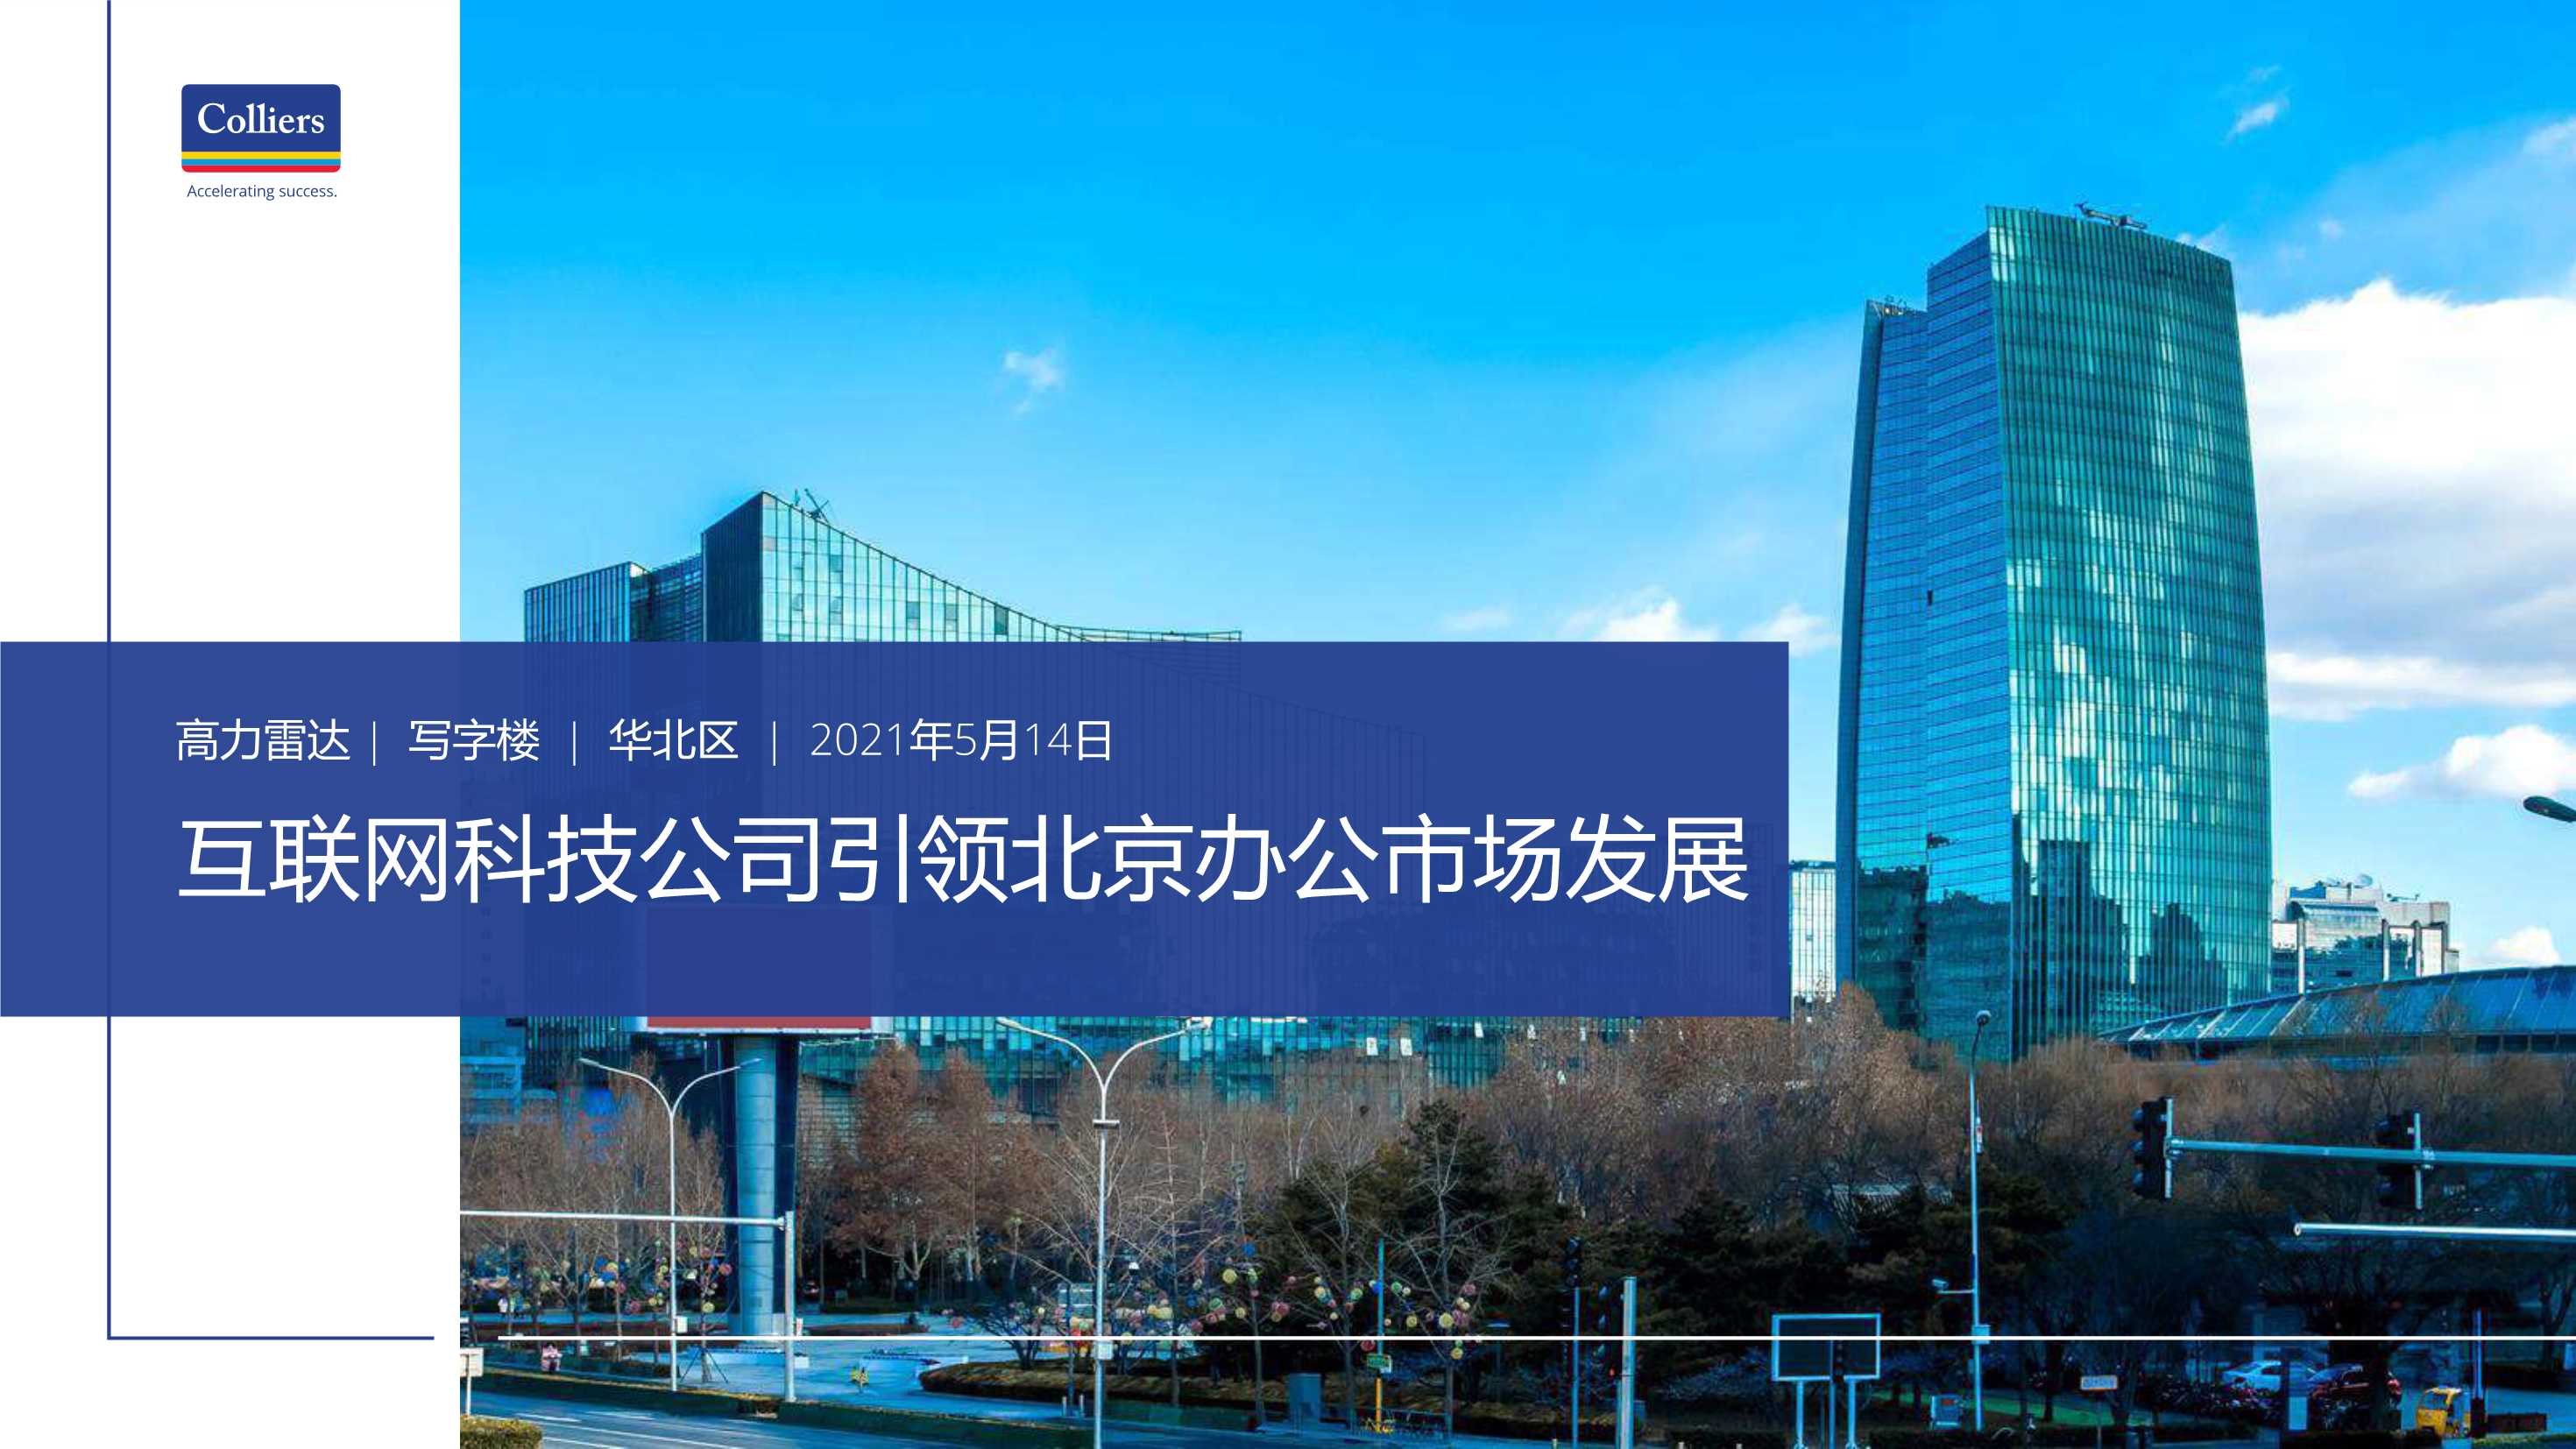 高力国际-互联网科技公司引领北京办公市场发展-2021.05-11页